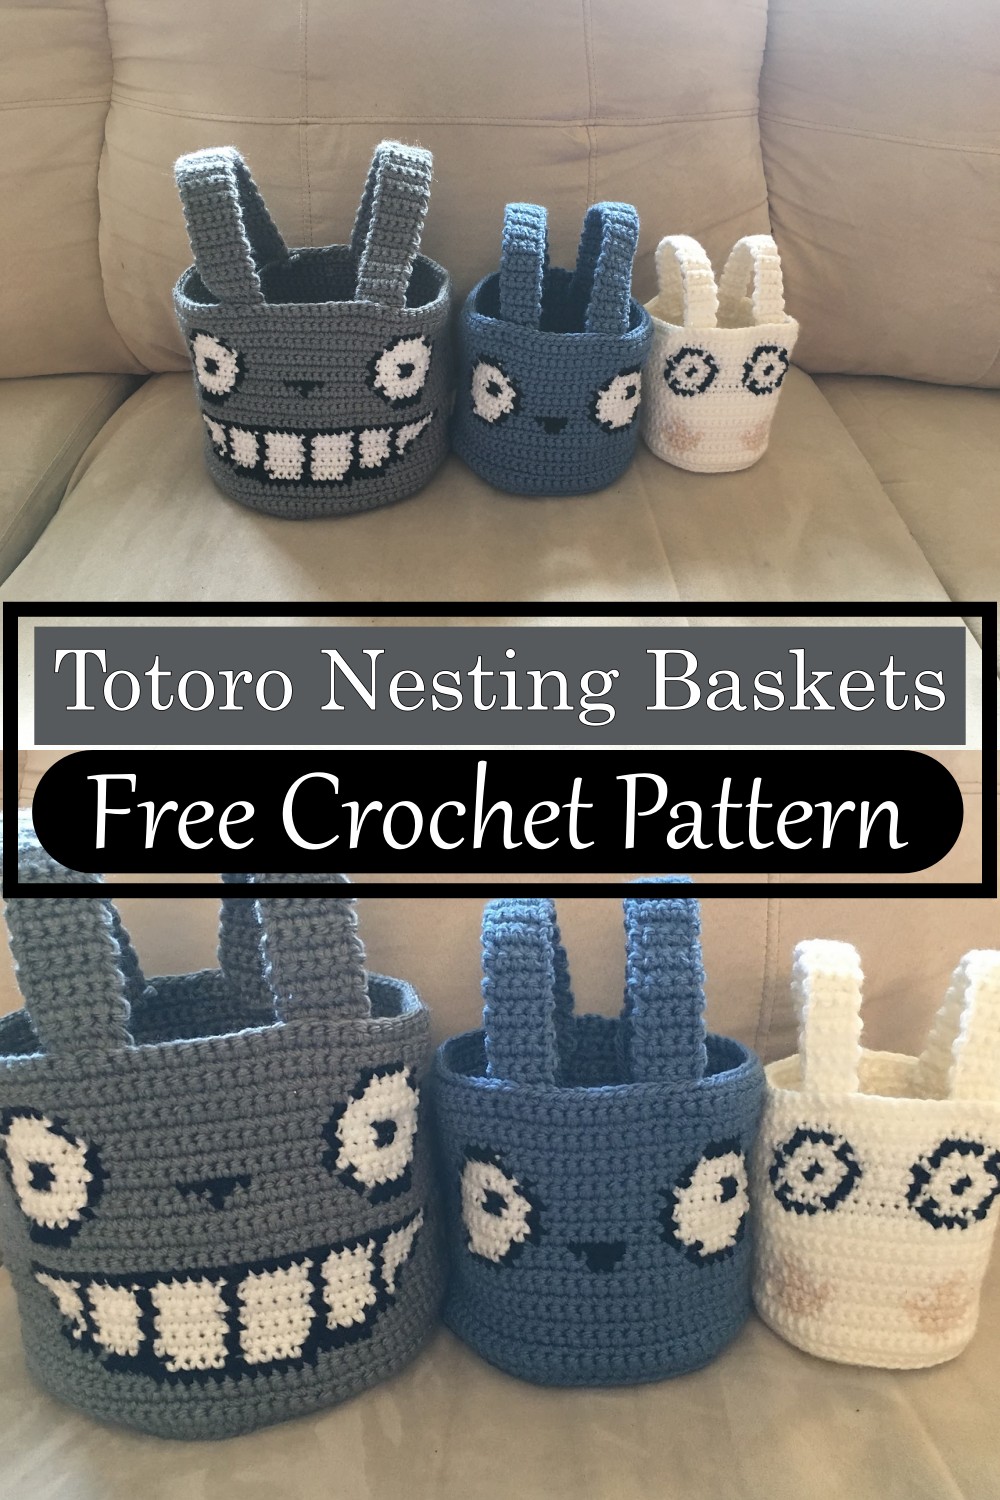 Totoro Nesting Baskets